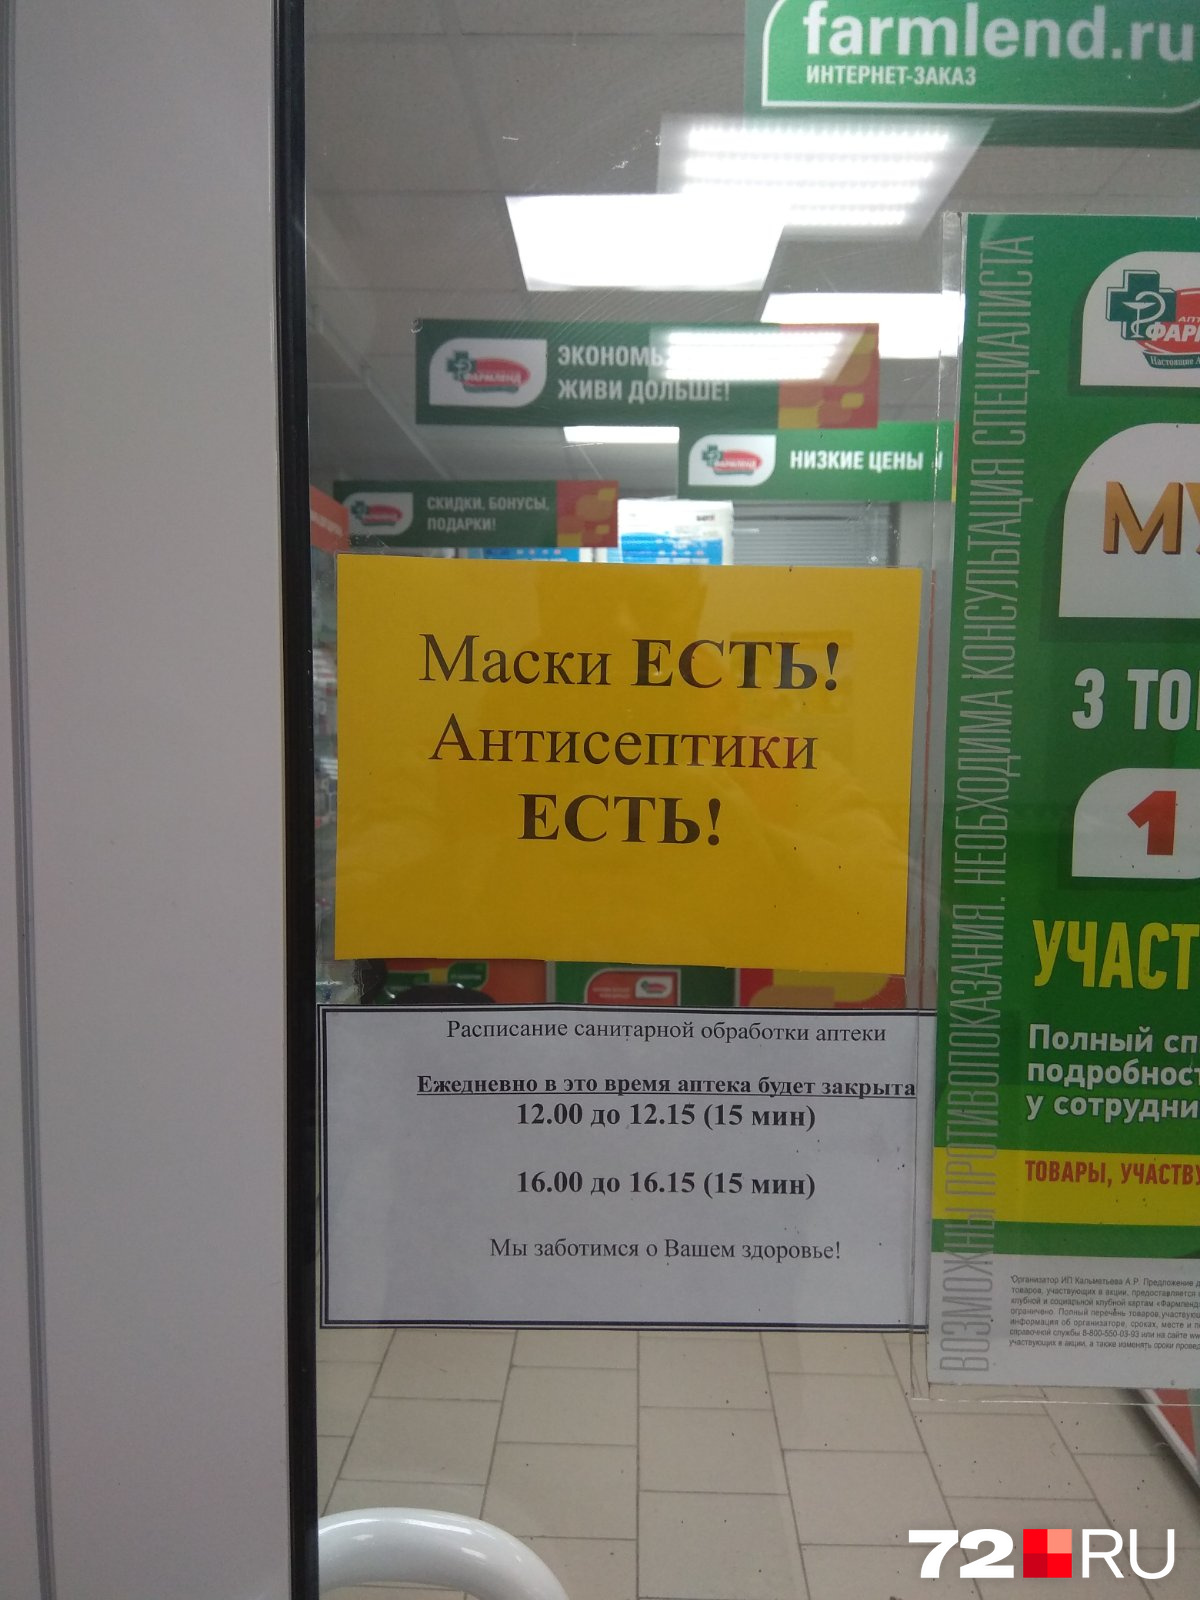 В одной из городских аптек появился дефицитный товар (Жуковского, 76)